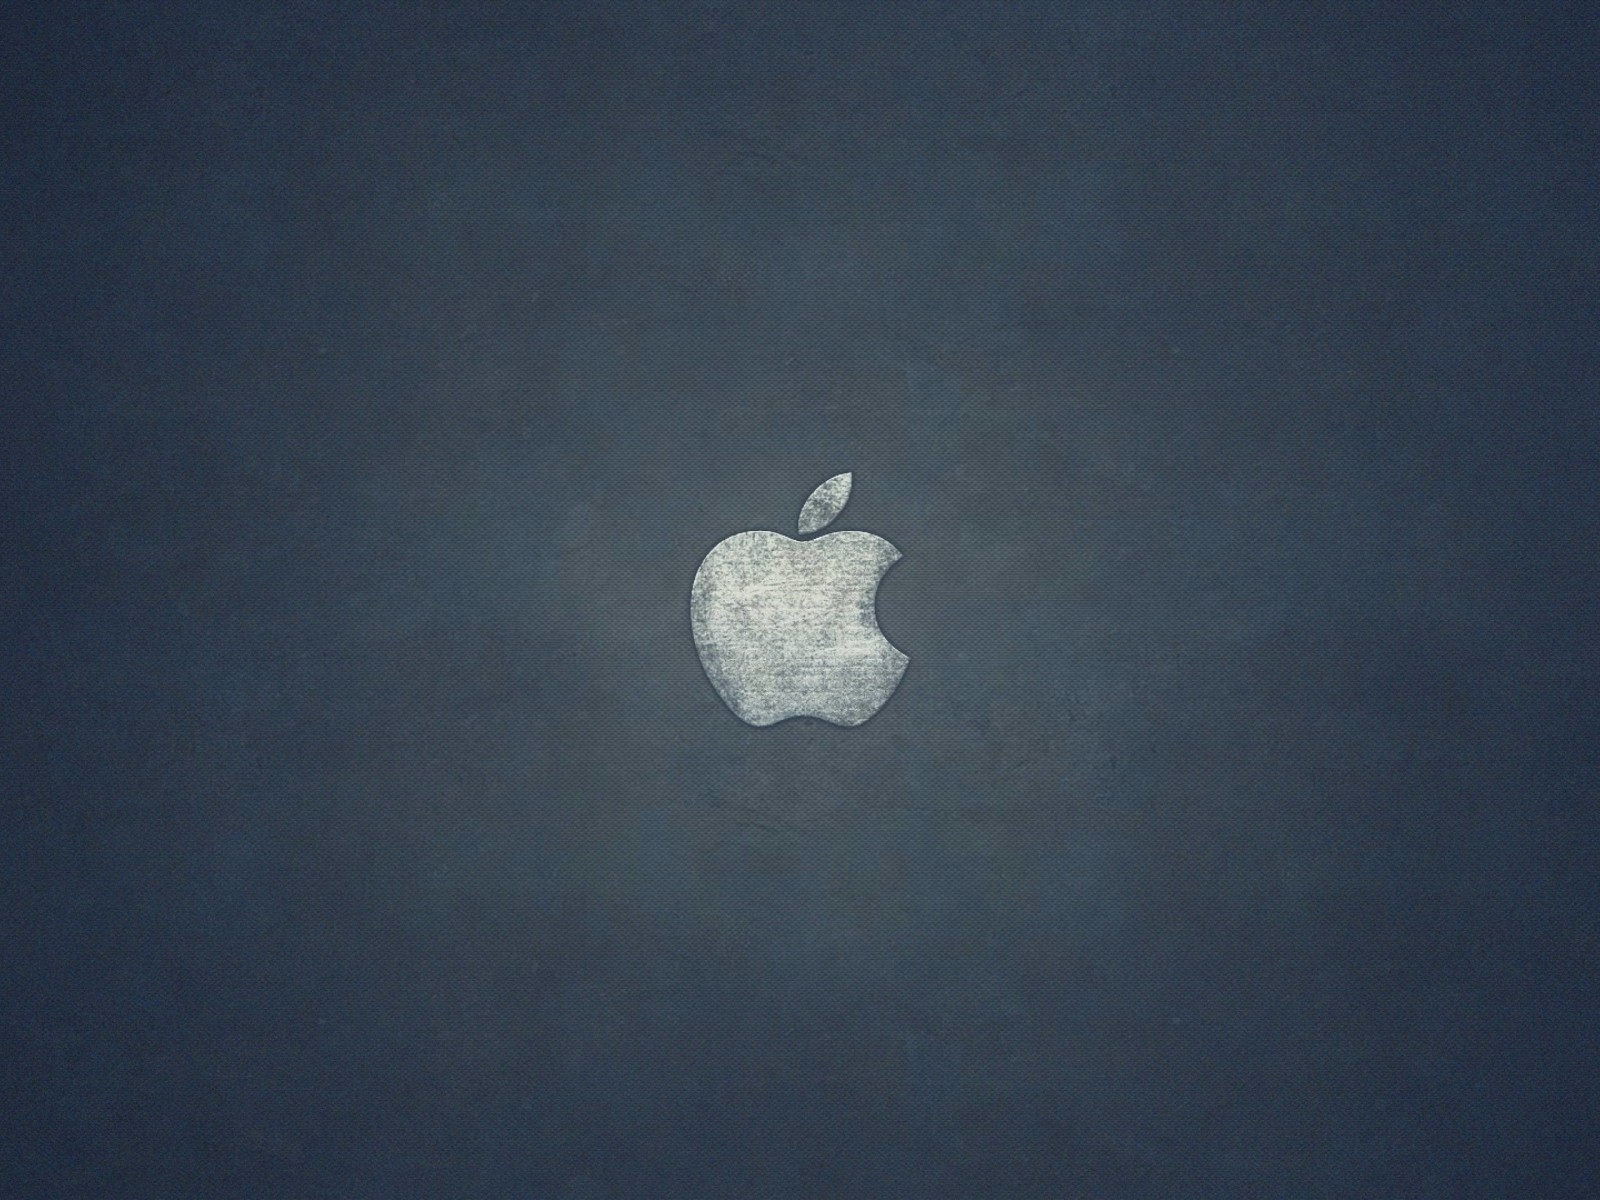 Grunge Apple Logo Wallpaper for Desktop 1600x1200